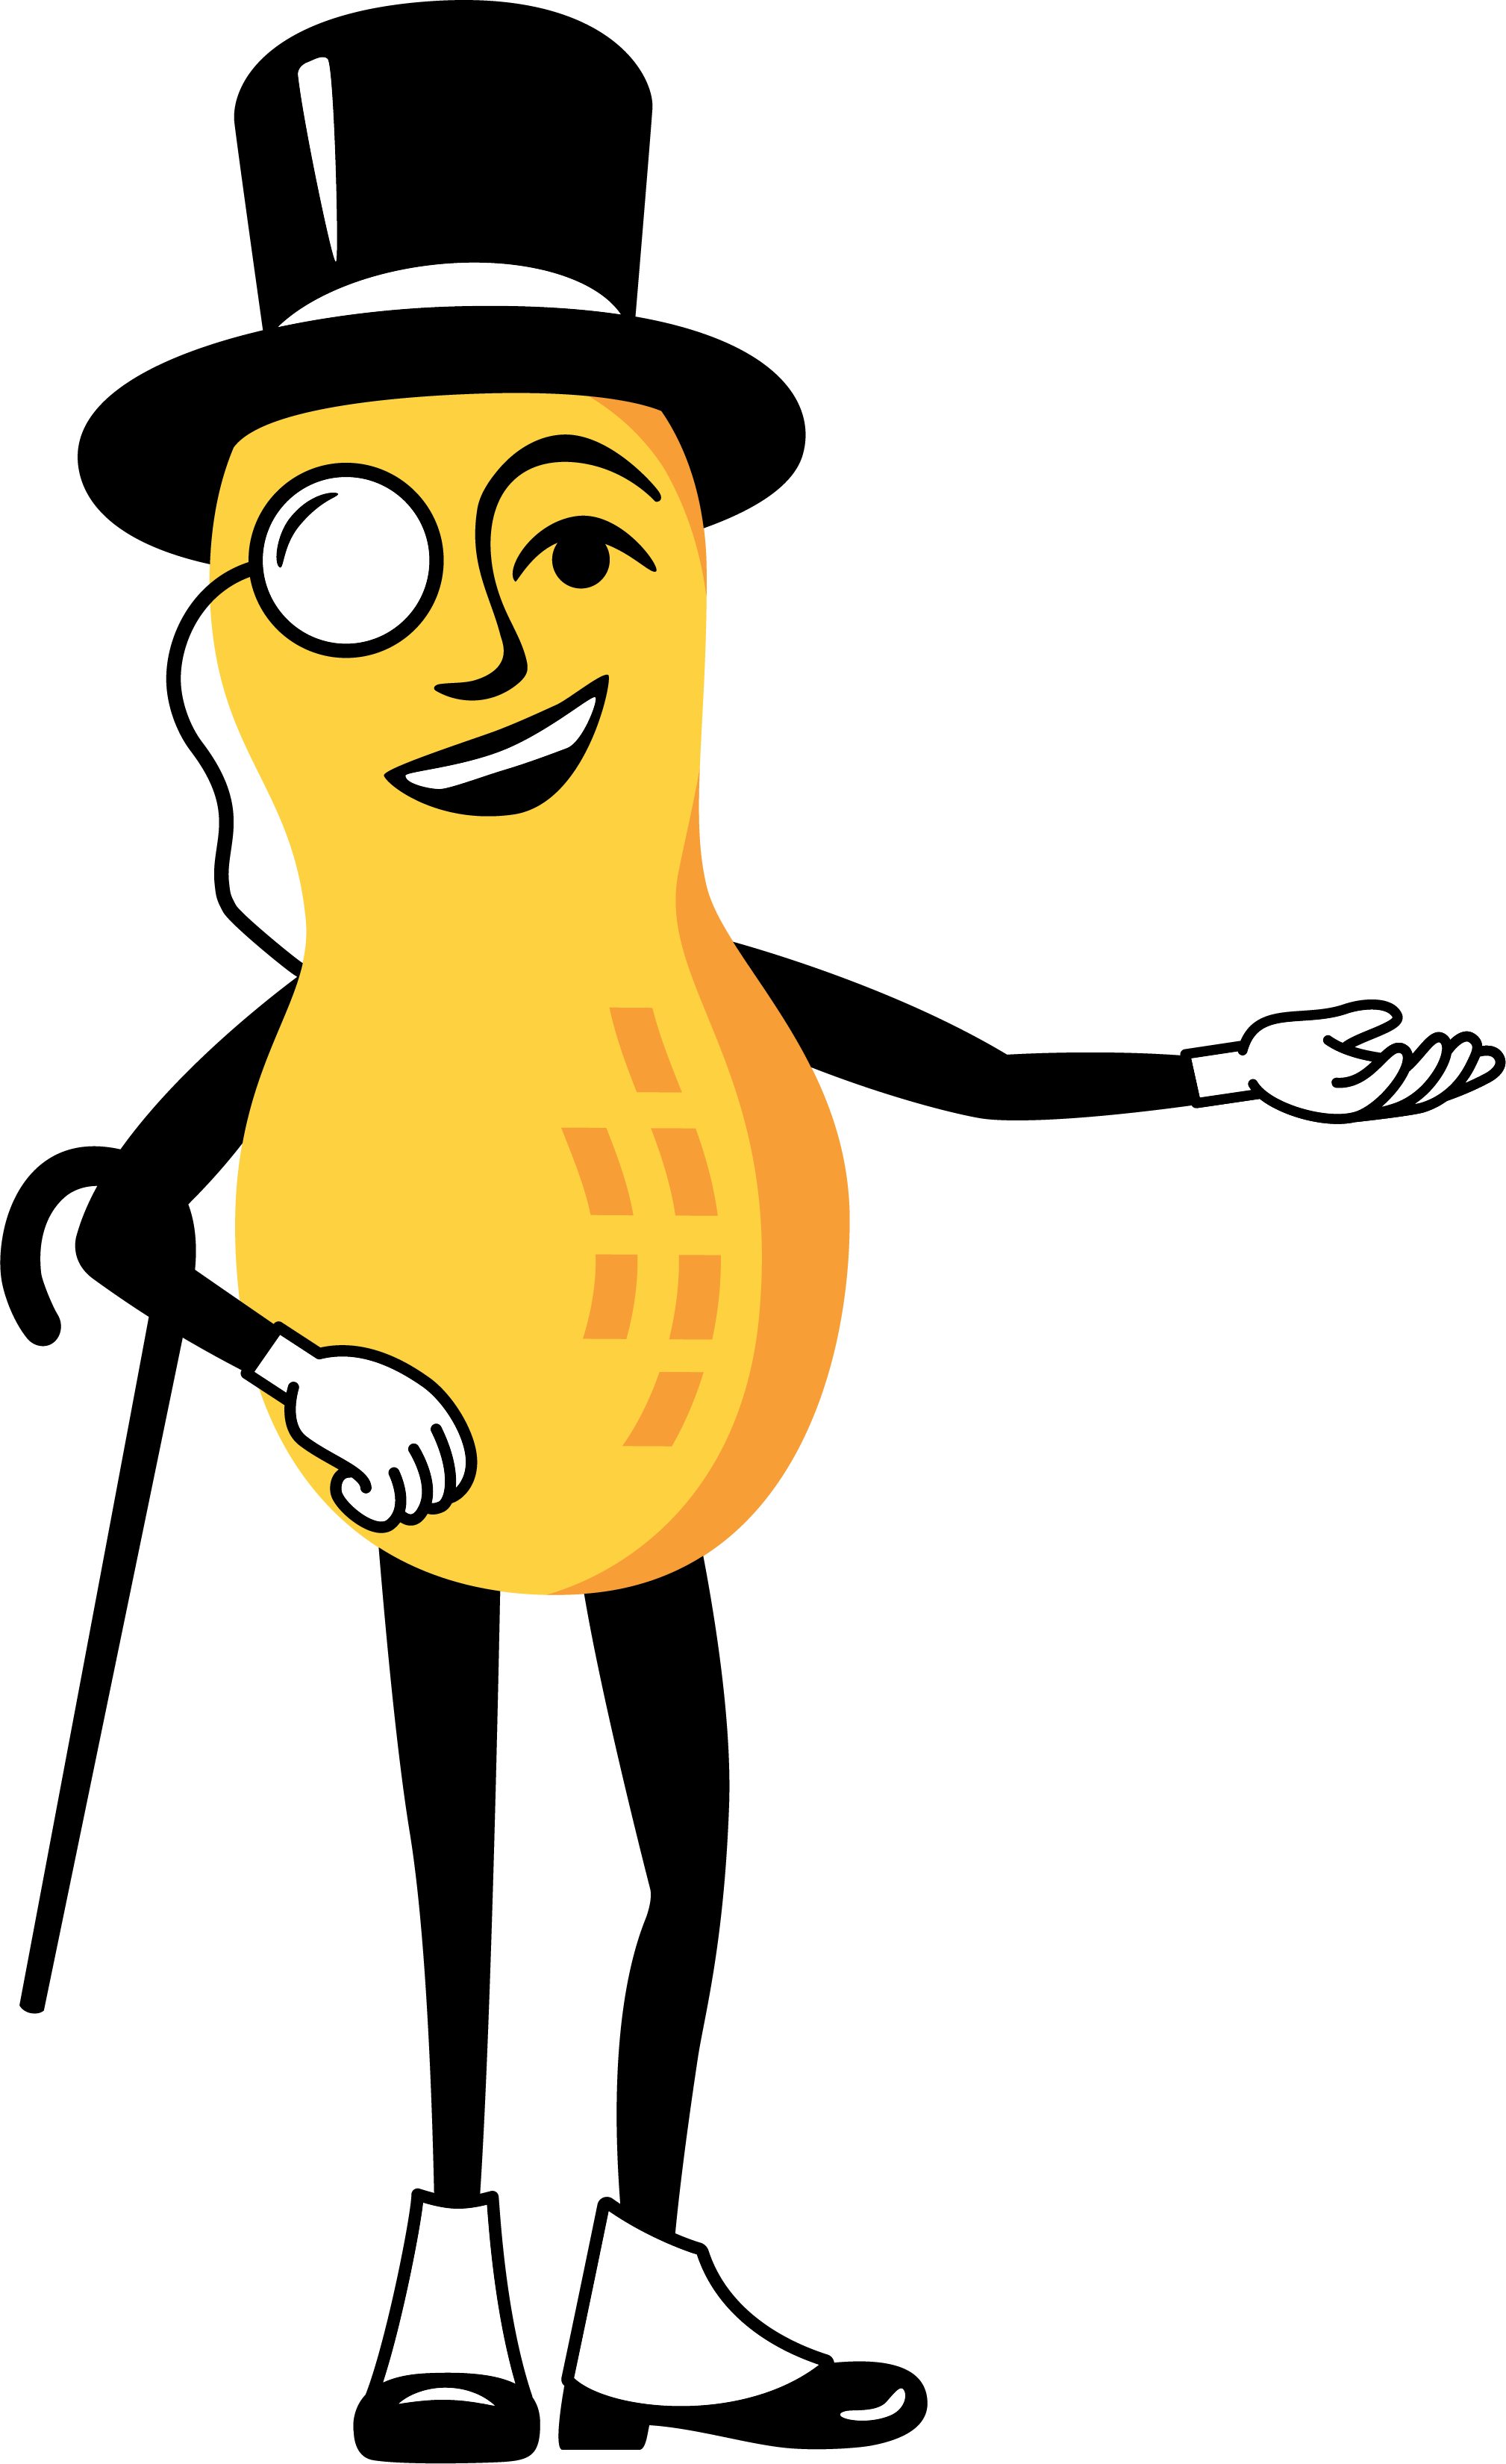 Mr. Peanut | Ad Mascot Wiki | Fandom